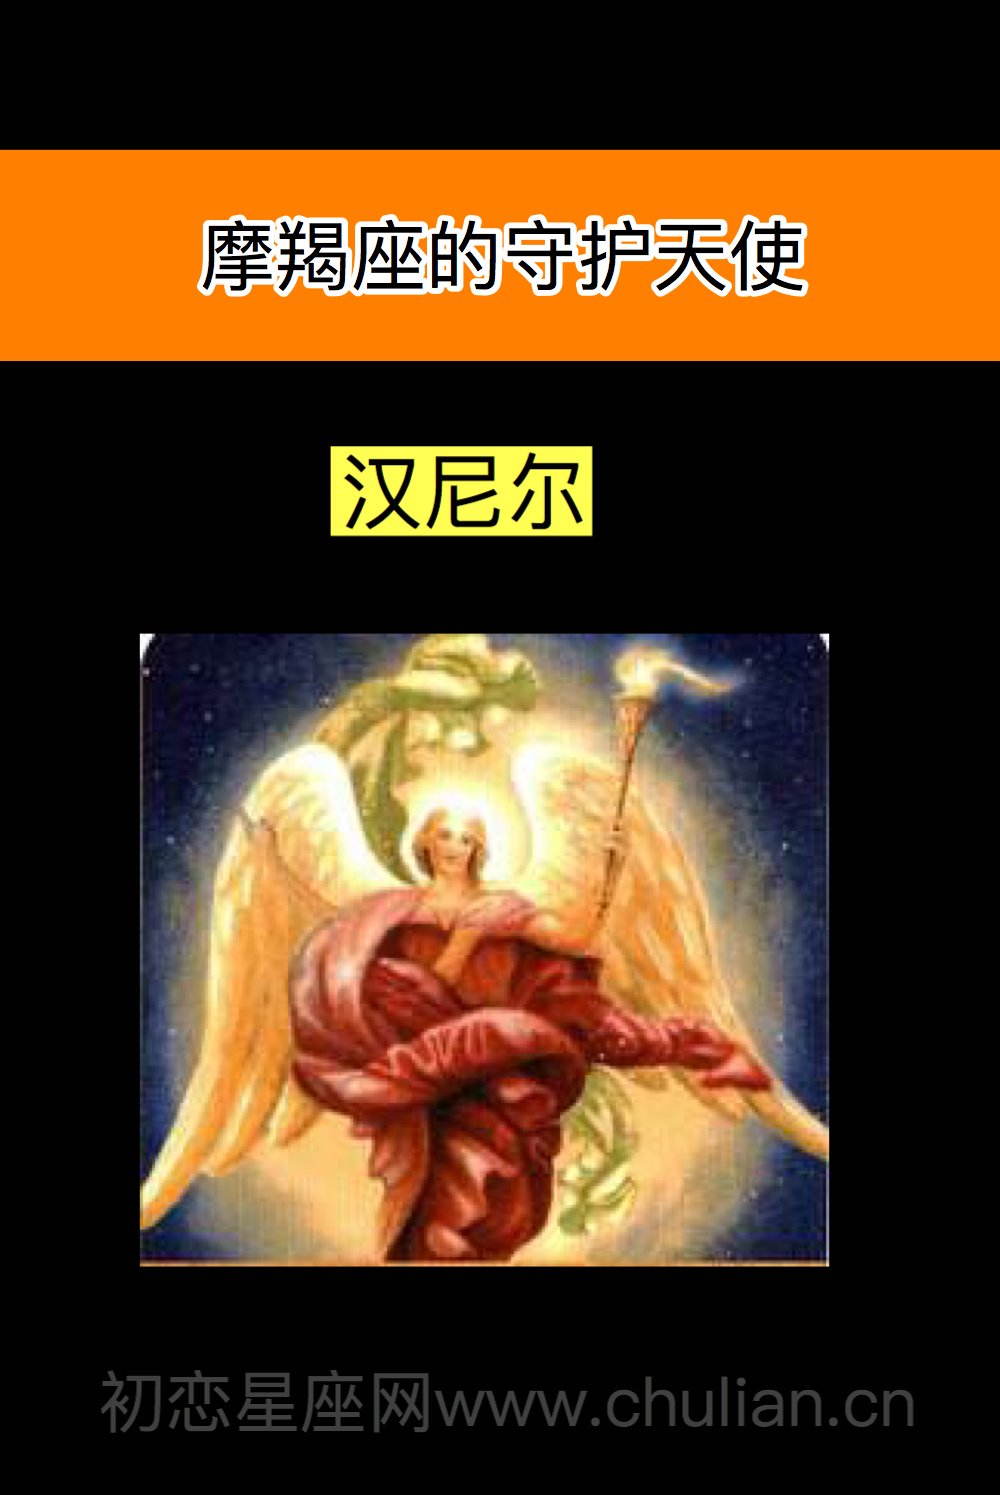 摩羯座的守护天使:汉尼尔(hanael)